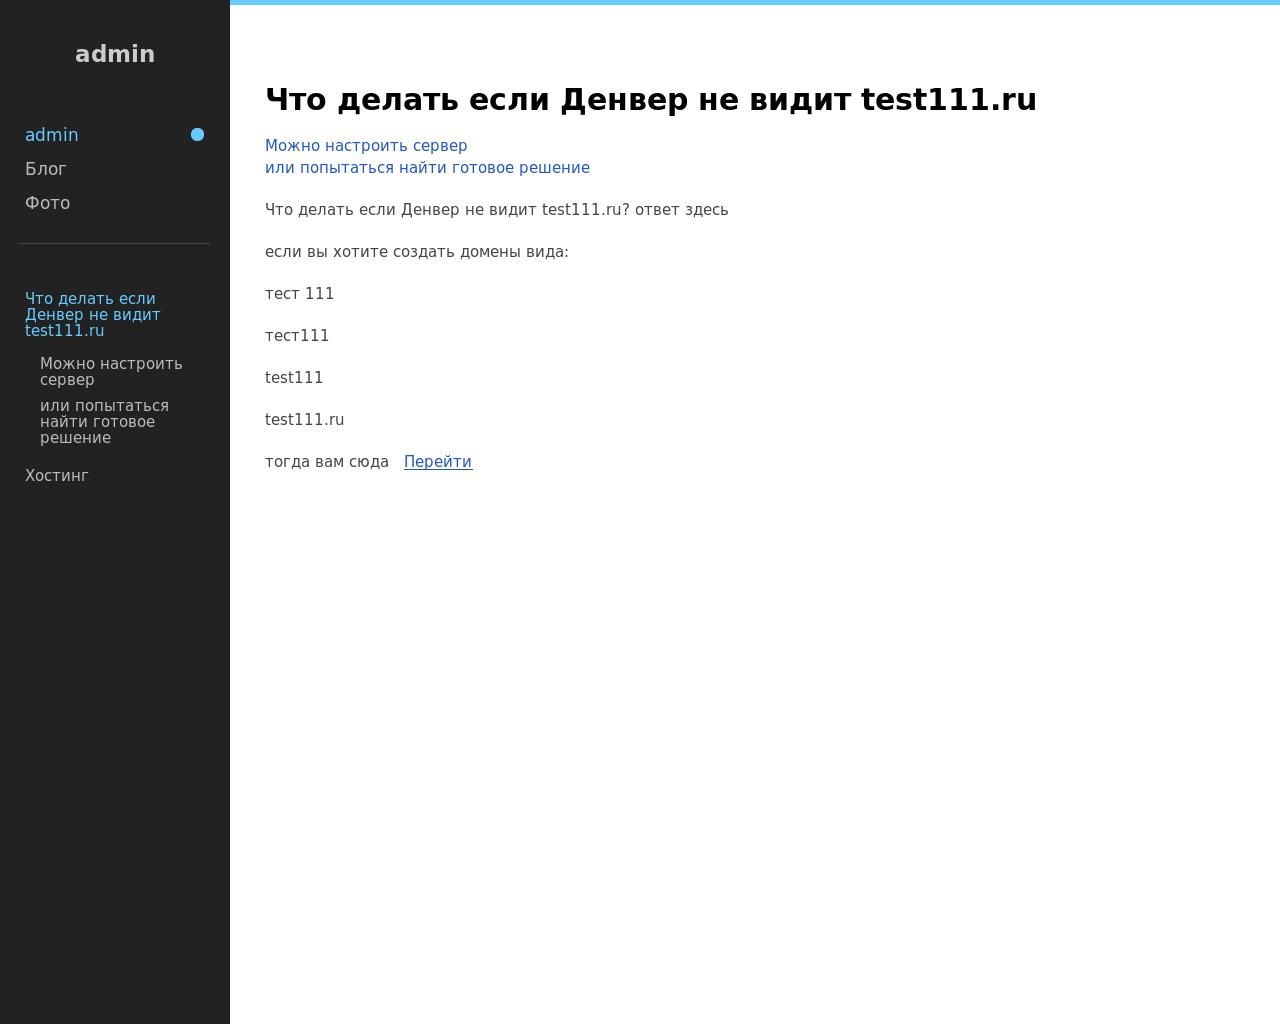 Изображение сайта test111.ru в разрешении 1280x1024